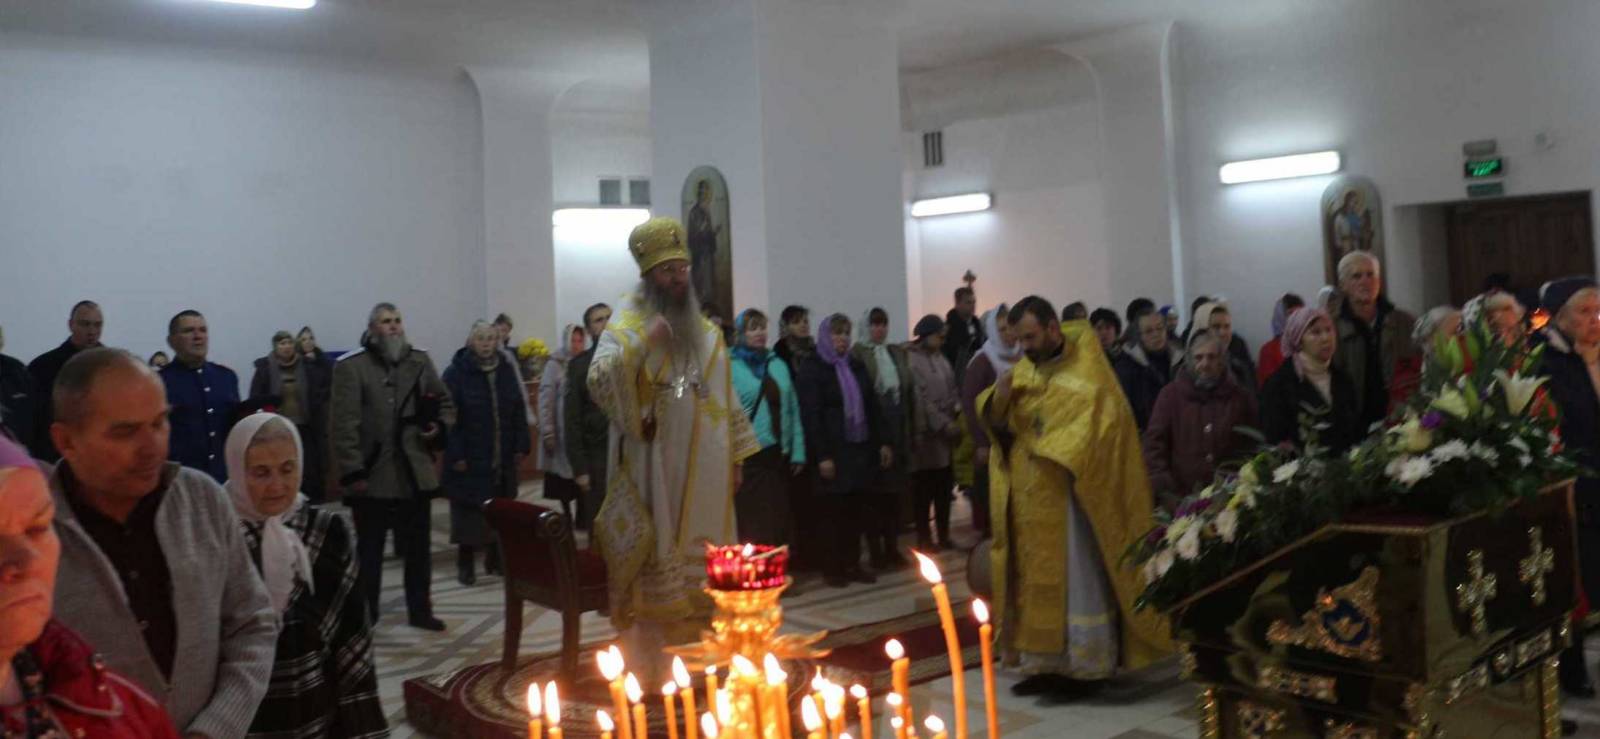 Божественная литургия в строящемся храме св. пр. Иоанна Кронштадтского (г.Волгоград).